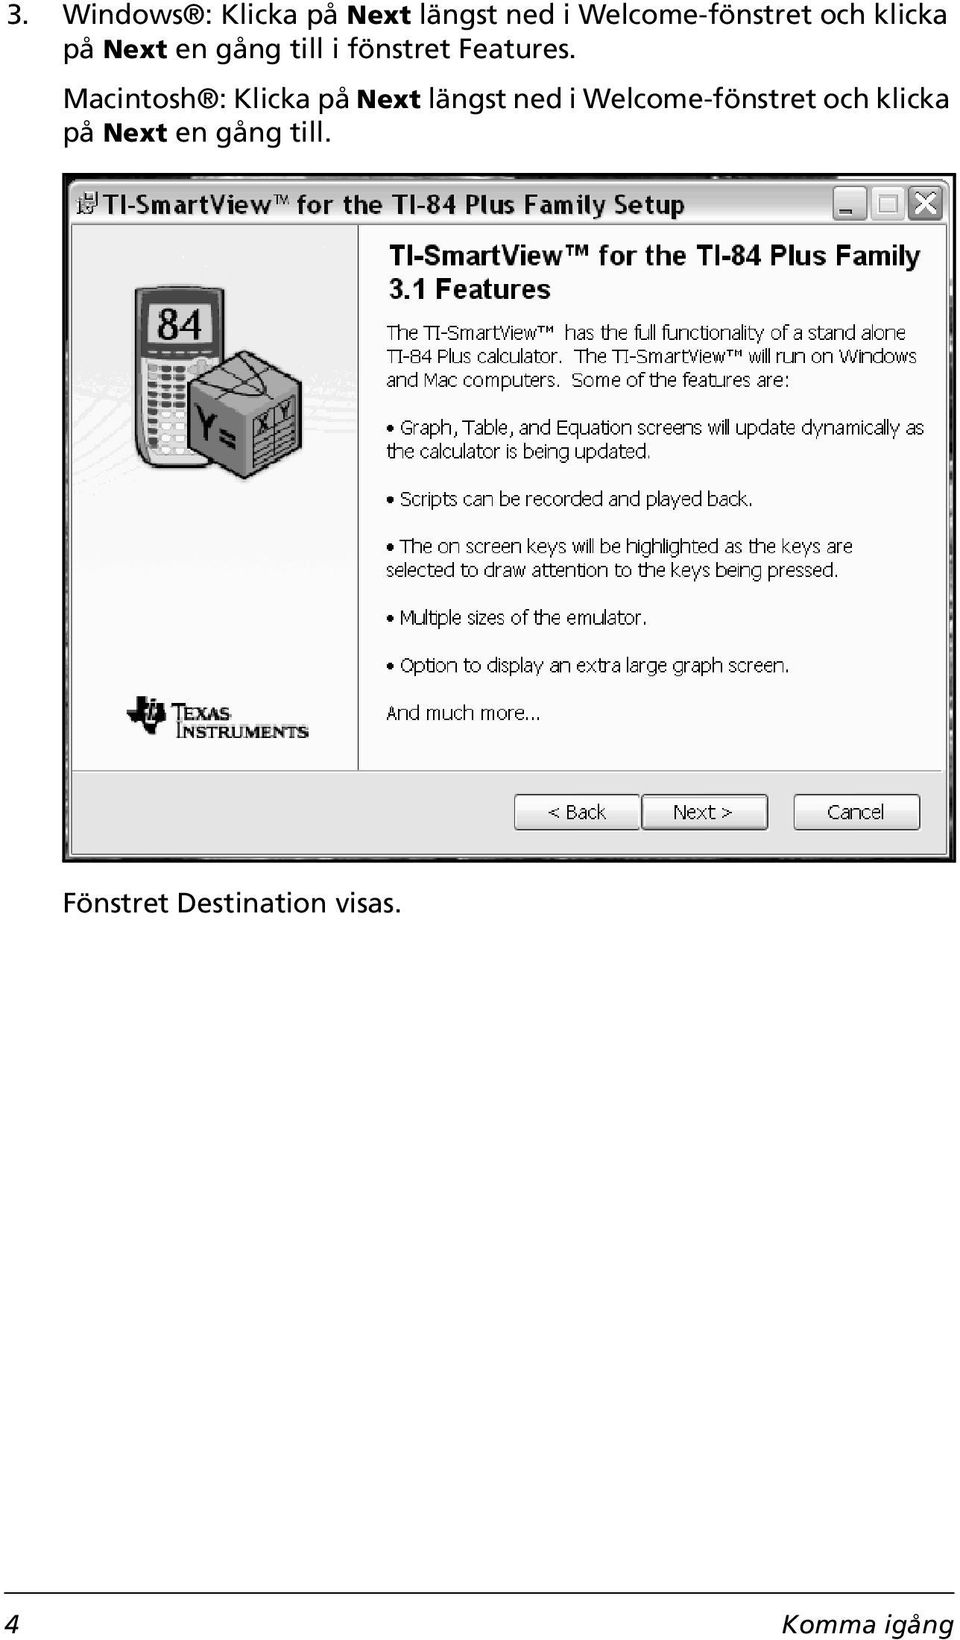 Macintosh : Klicka på Next längst ned i Welcome-fönstret och